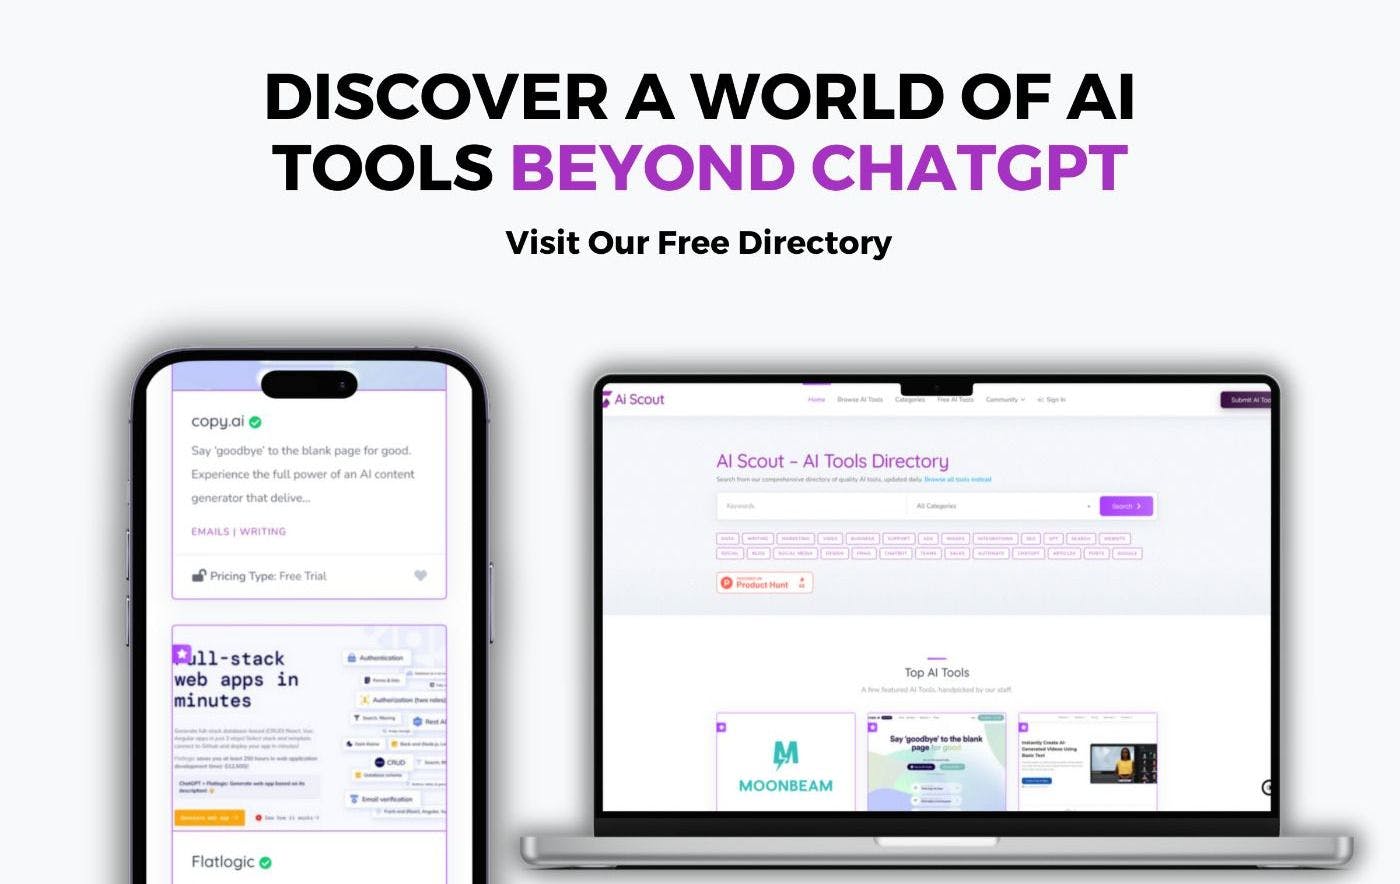 AI Scout представляет каталог инструментов AI для бизнеса и частных лиц